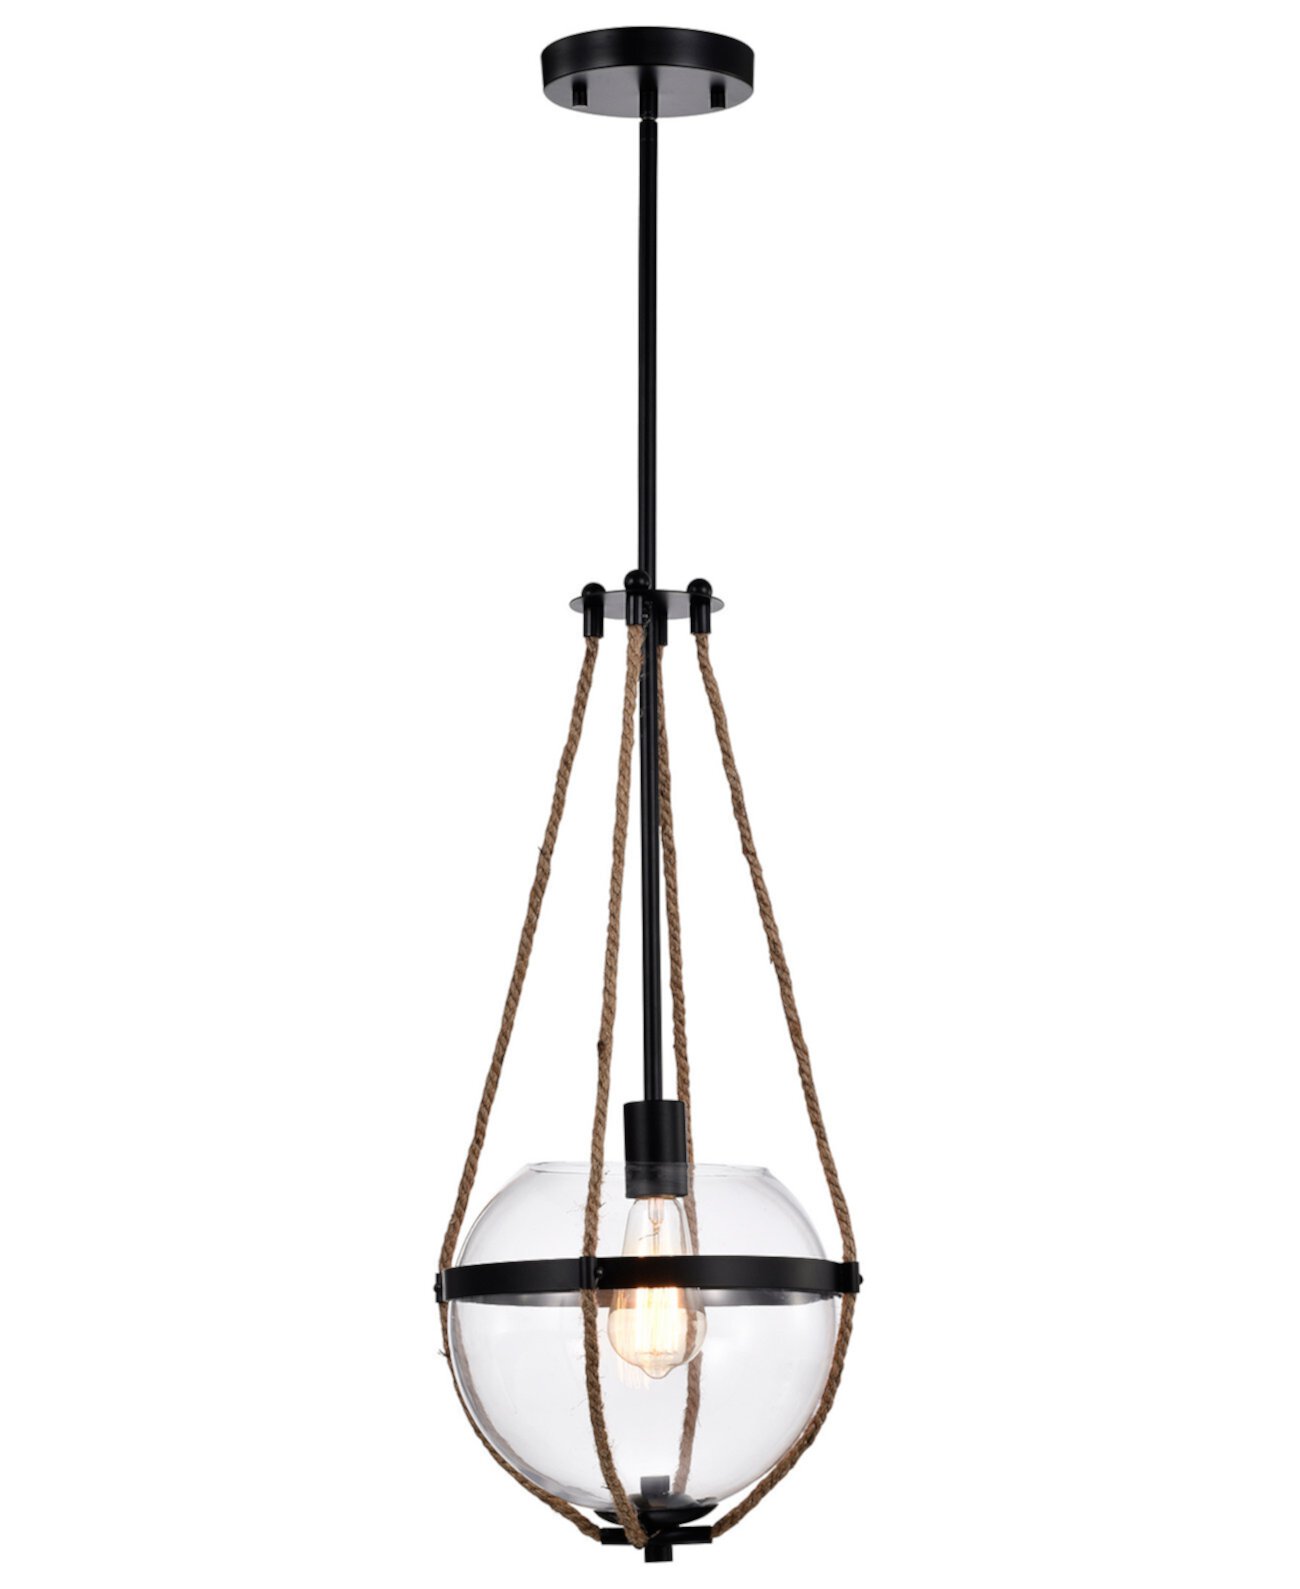 Medeia 11-дюймовый подвесной светильник для внутреннего освещения с 1 лампой и комплектом светильников Home Accessories